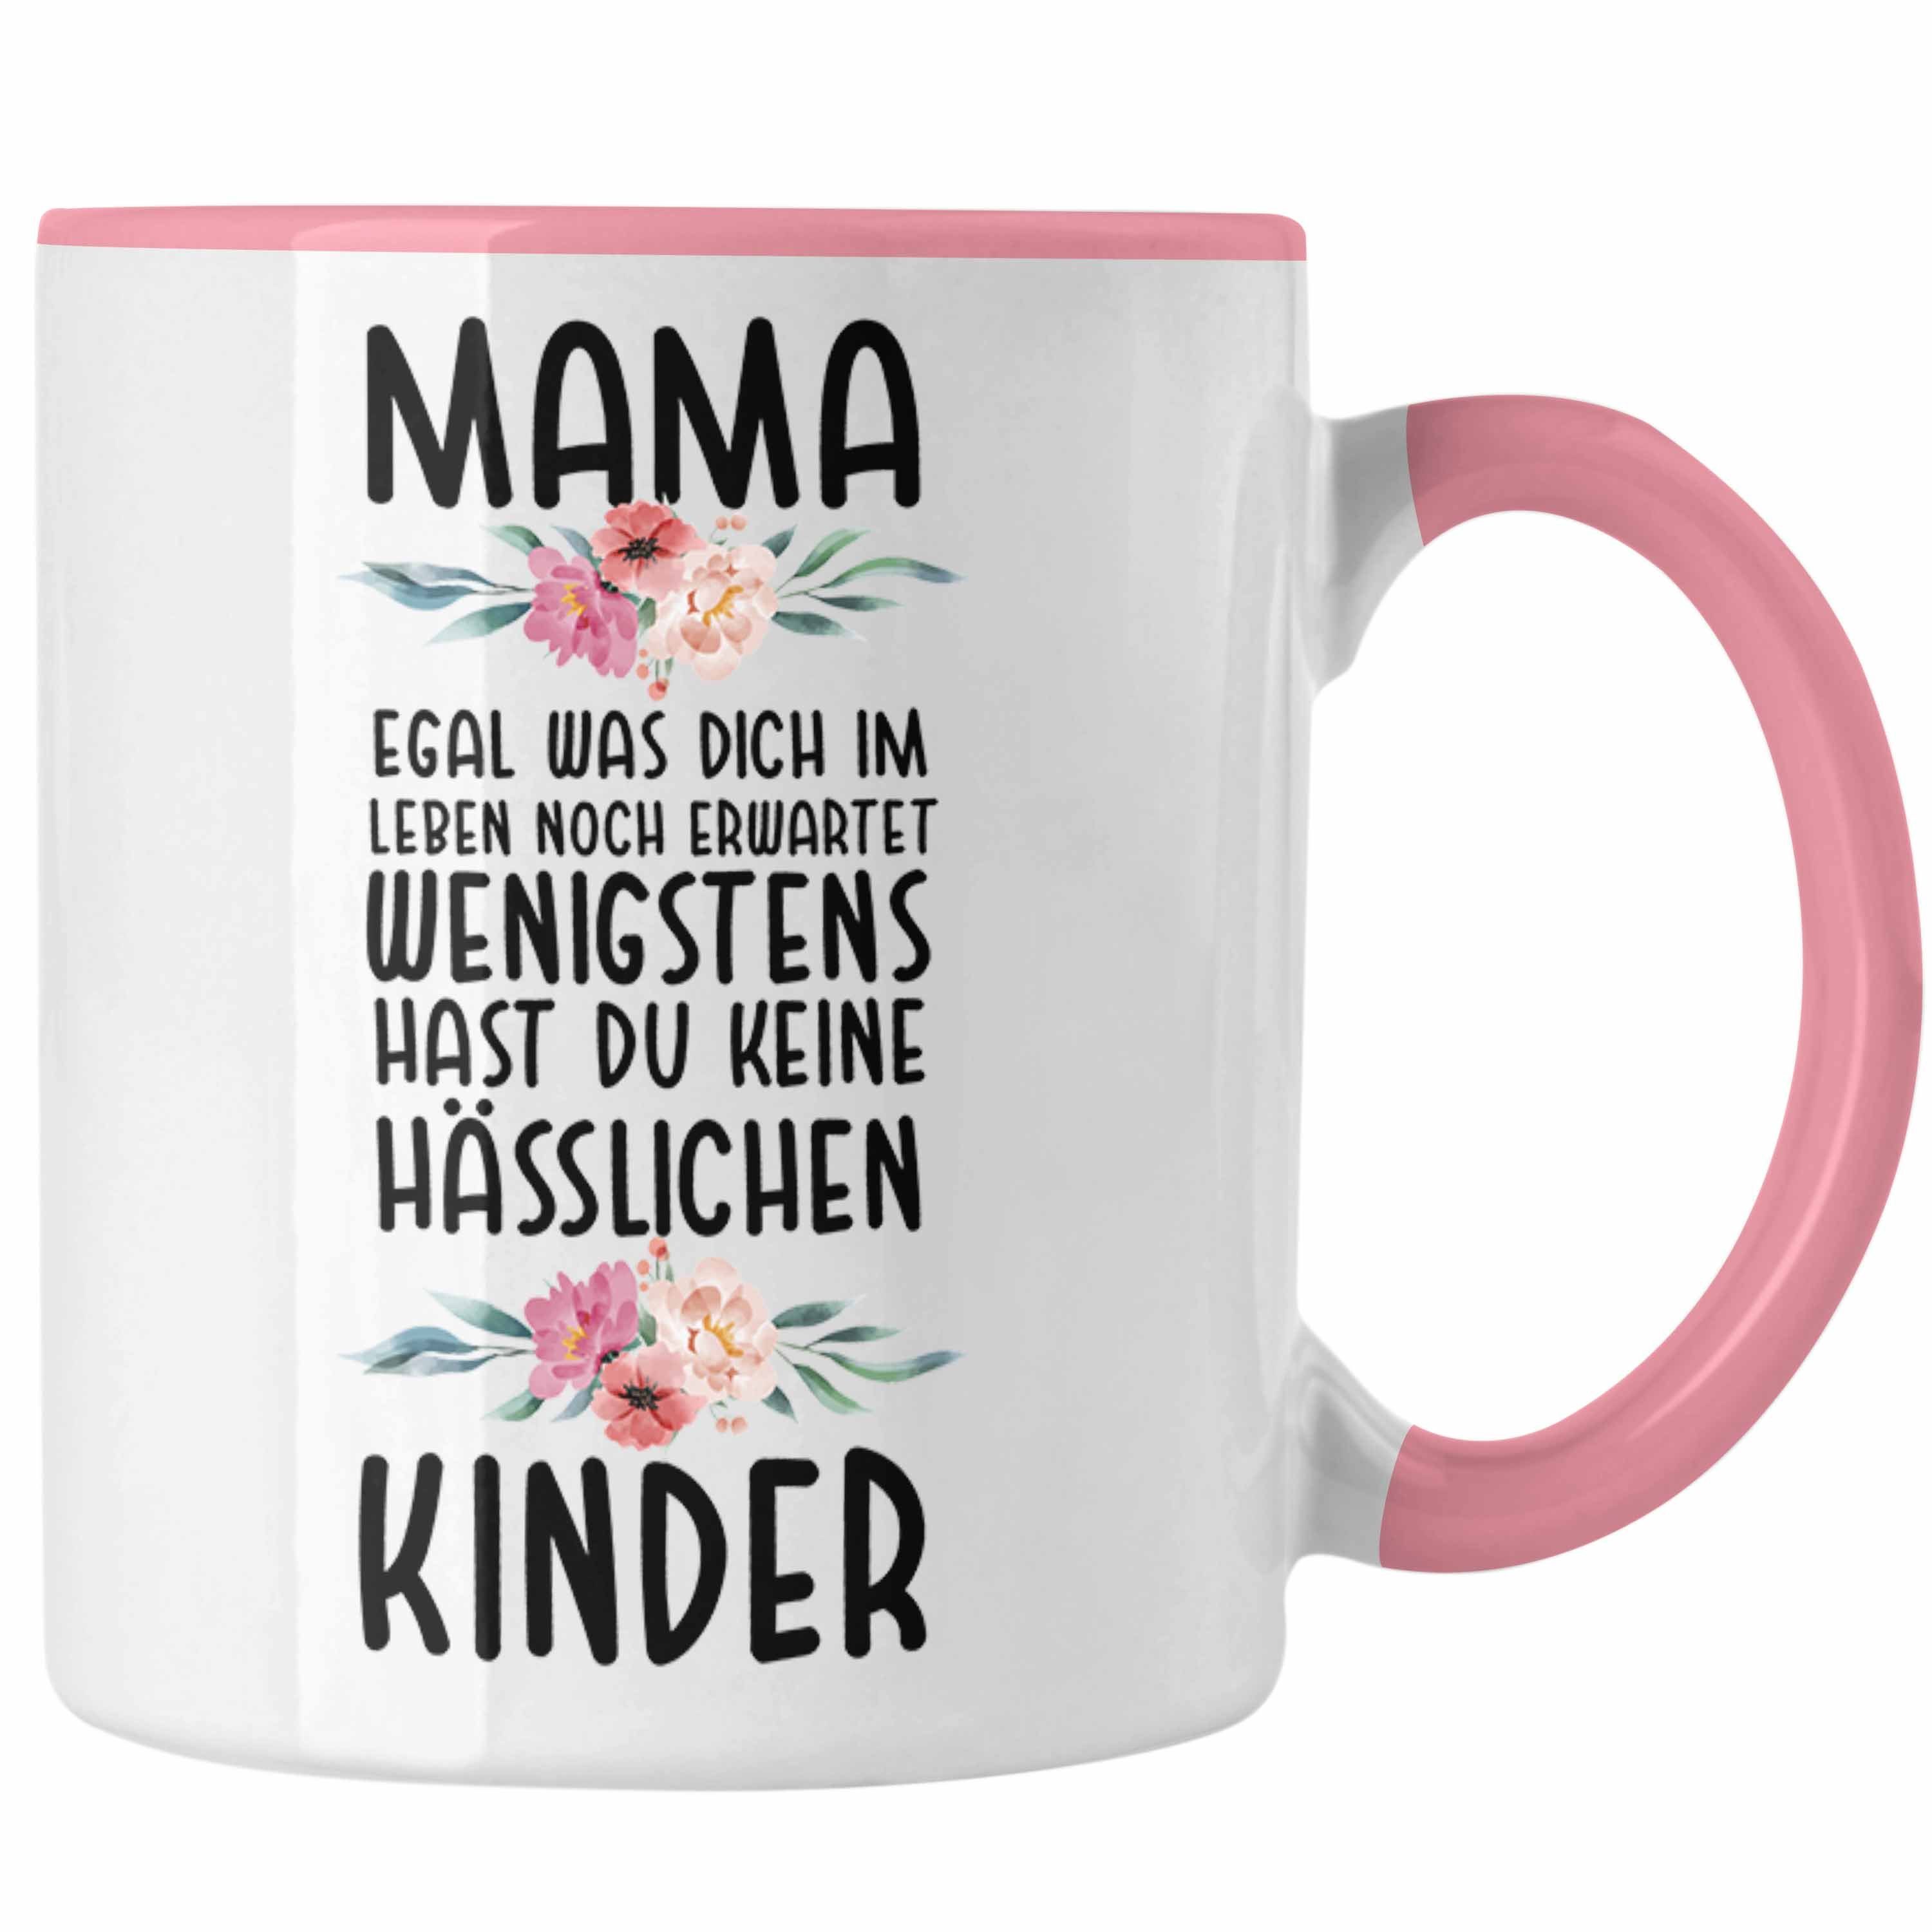 Muttertag Mama von Trendation Geburtstag Tasse Mutter Kinder Tasse Geschenk Spruch Mami Hässliche Kinder Rosa - Trendation